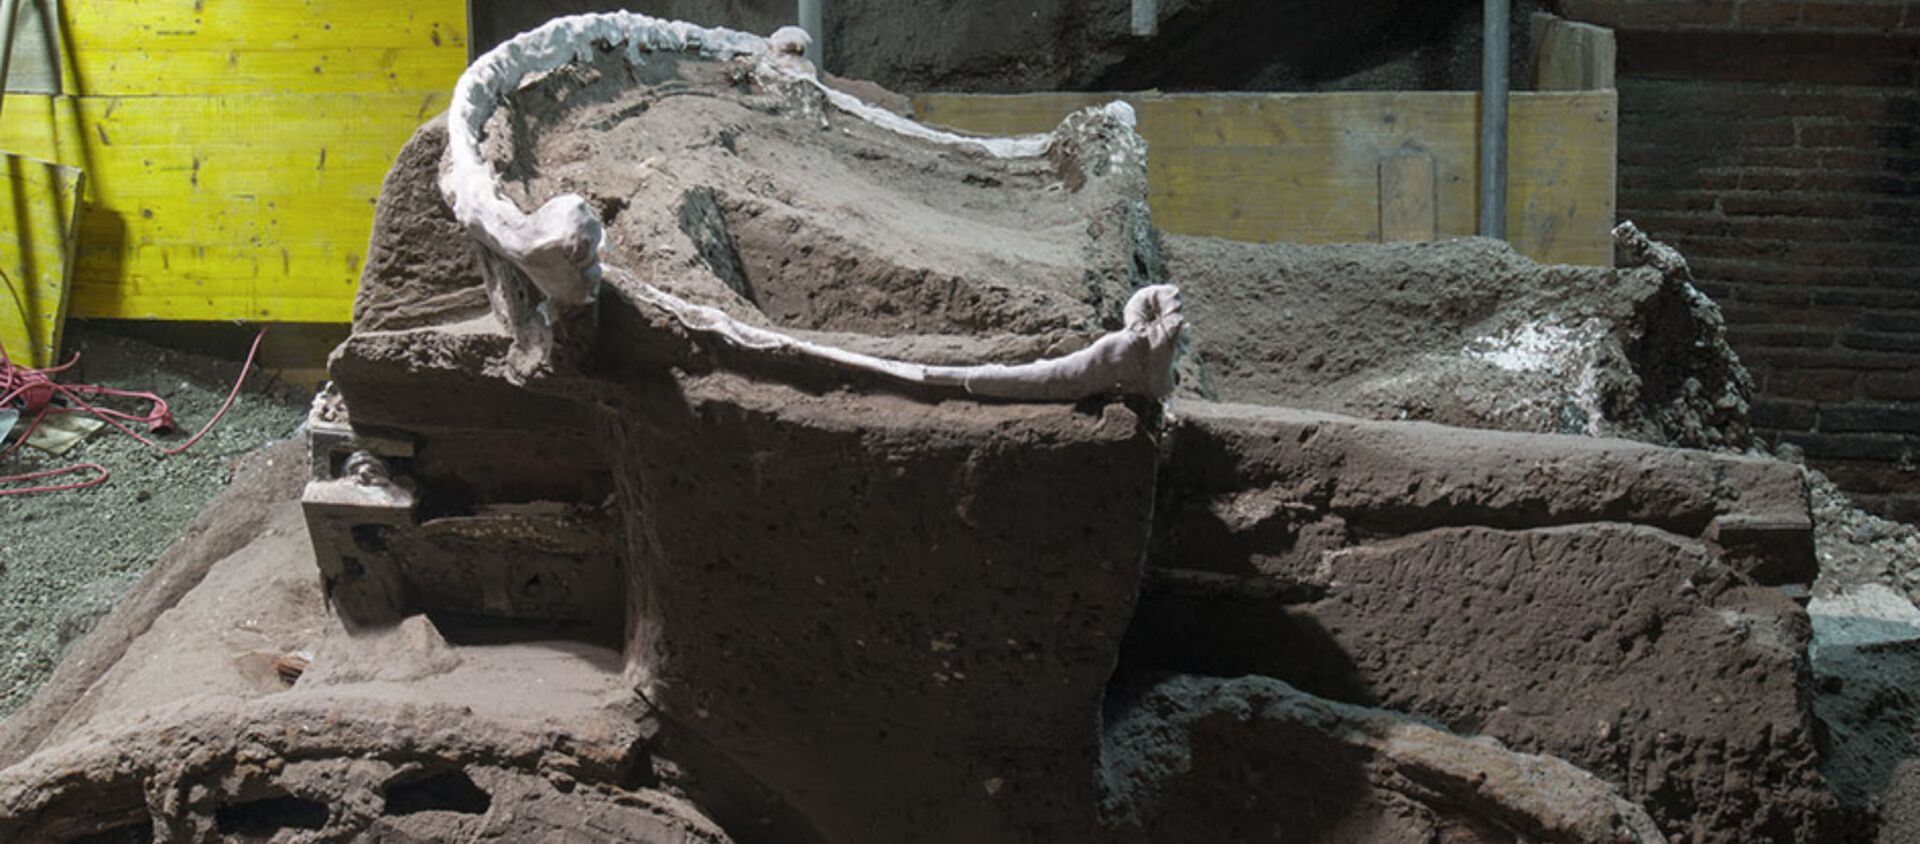 Археологи обнаружили в Помпеях уникальную находку - Sputnik Грузия, 1920, 28.02.2021